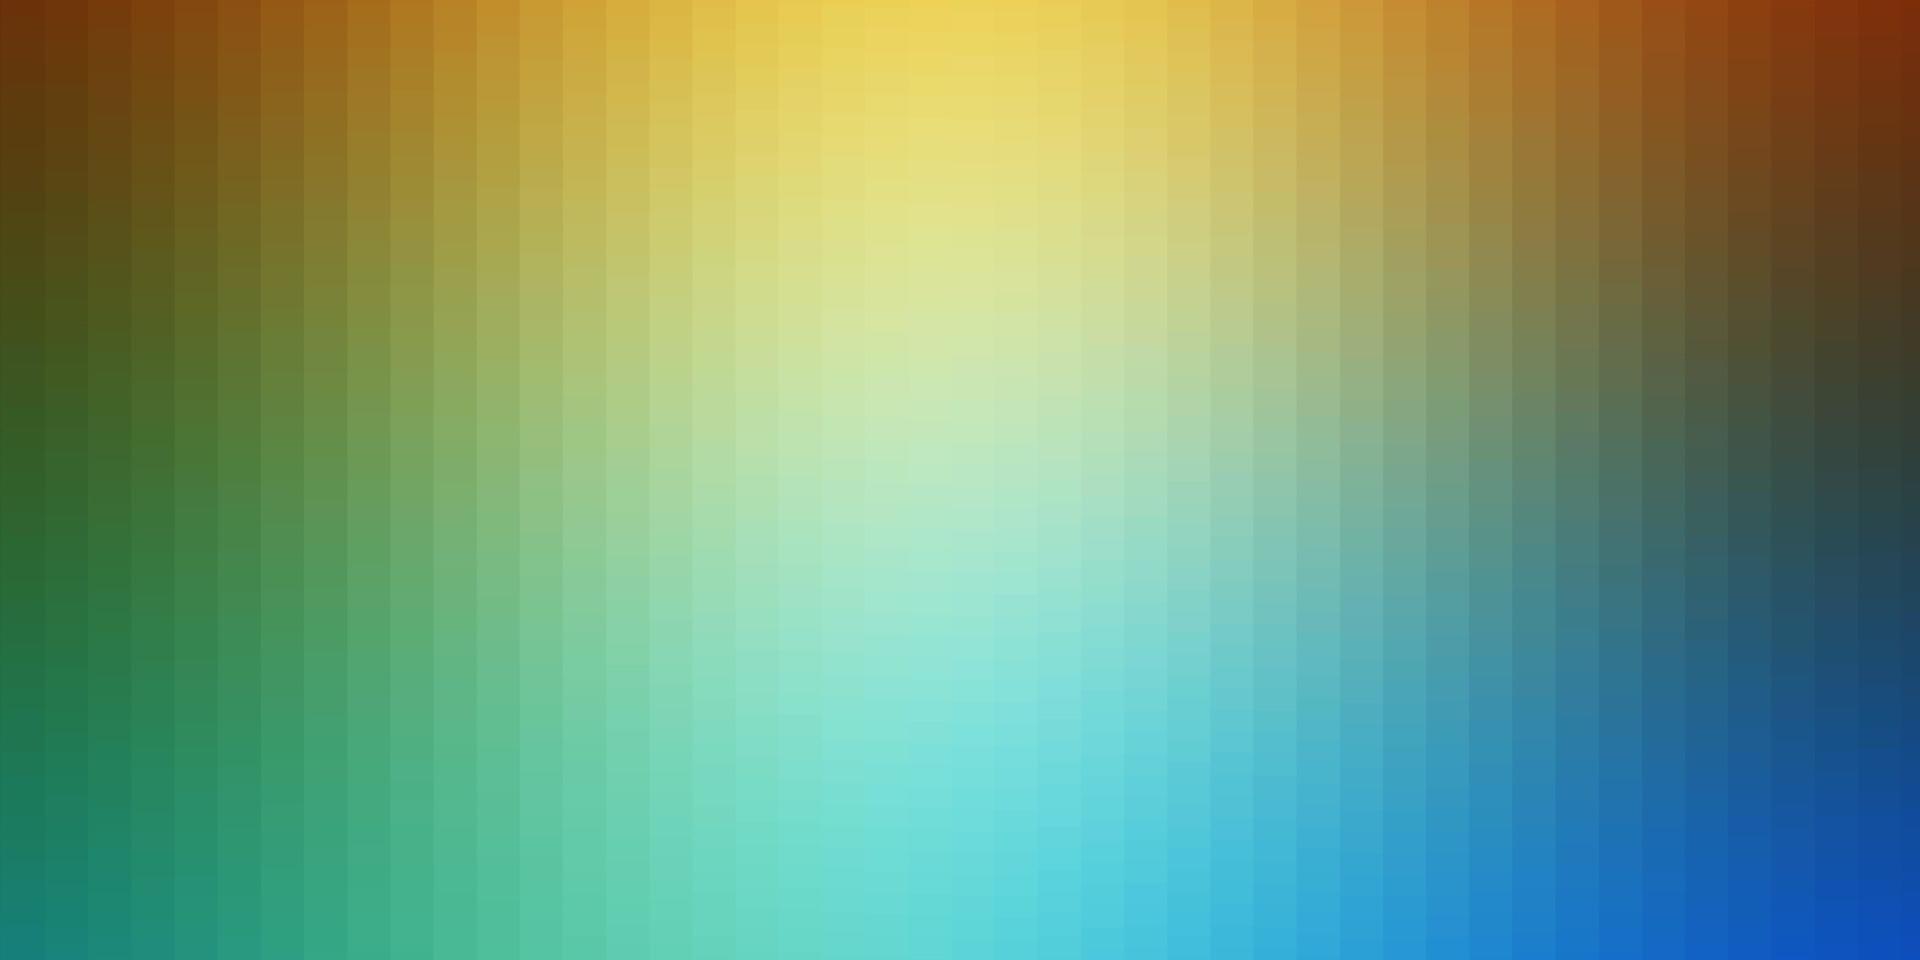 ljusblå, gul vektorbakgrund med rektanglar. vektor